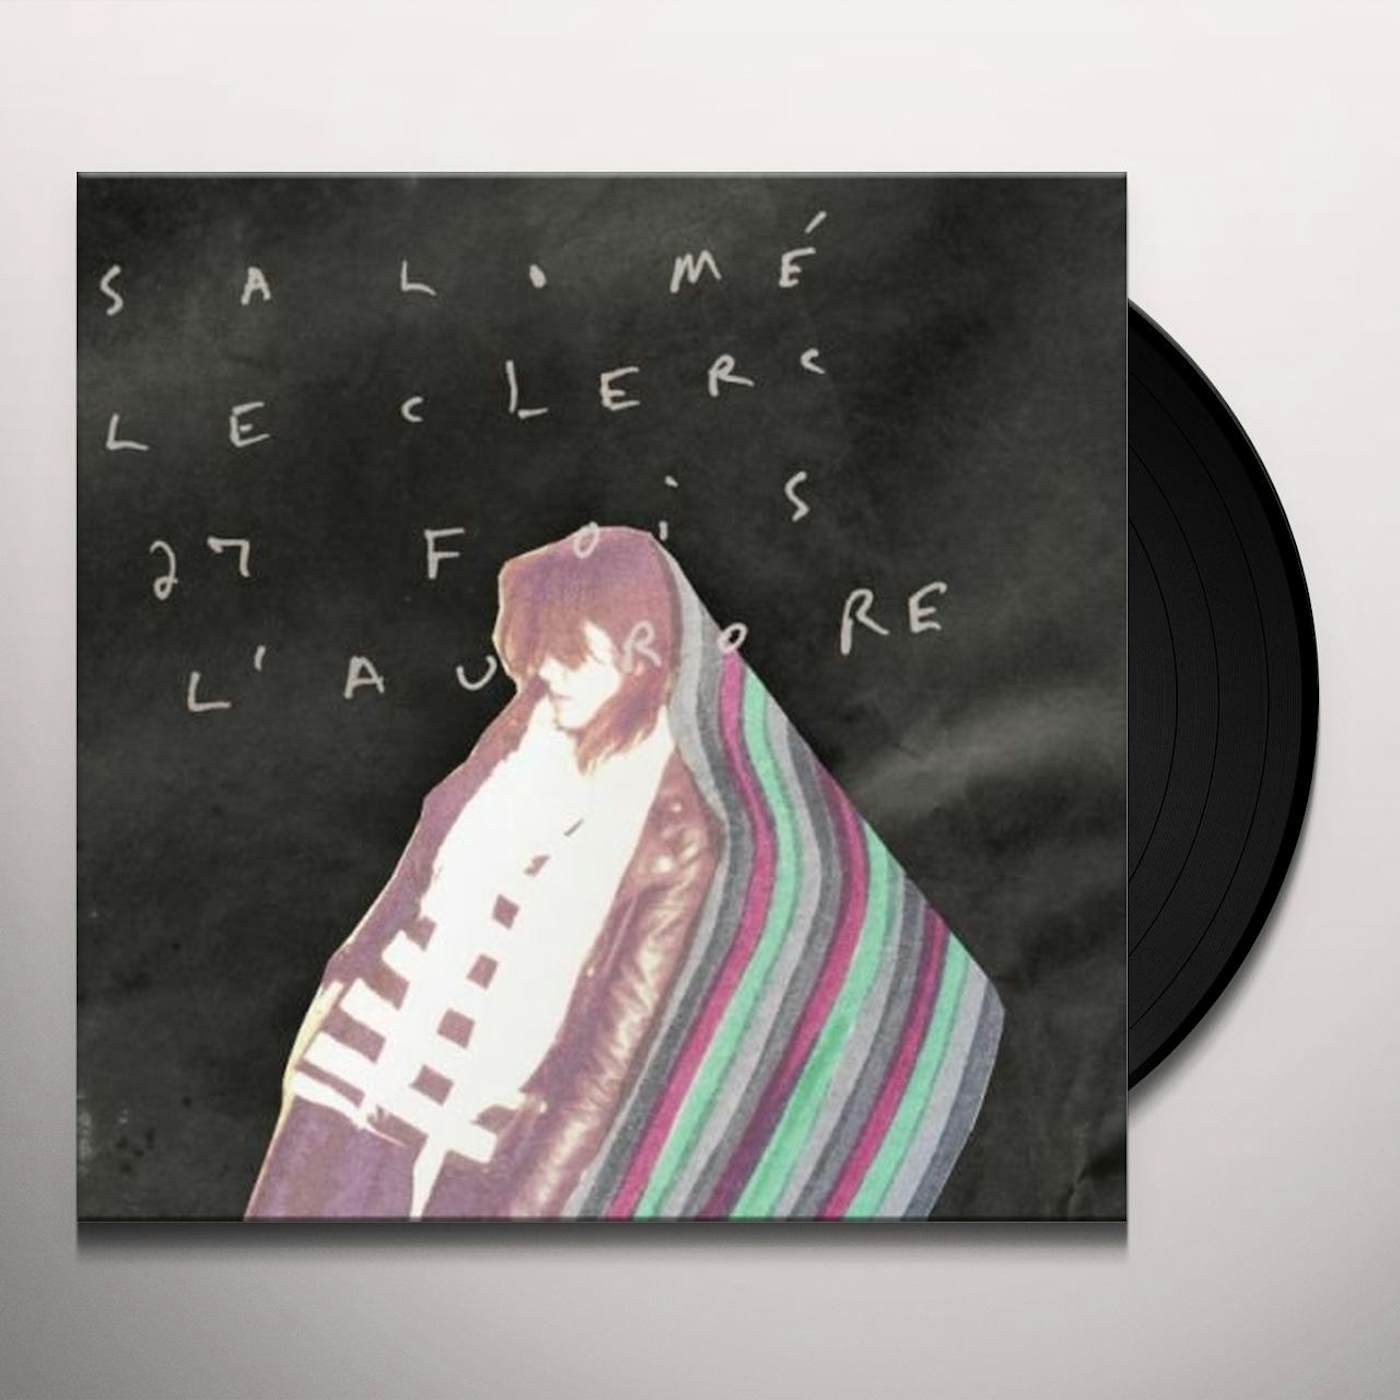 Salomé Leclerc 27 Fois L'aurore Vinyl Record